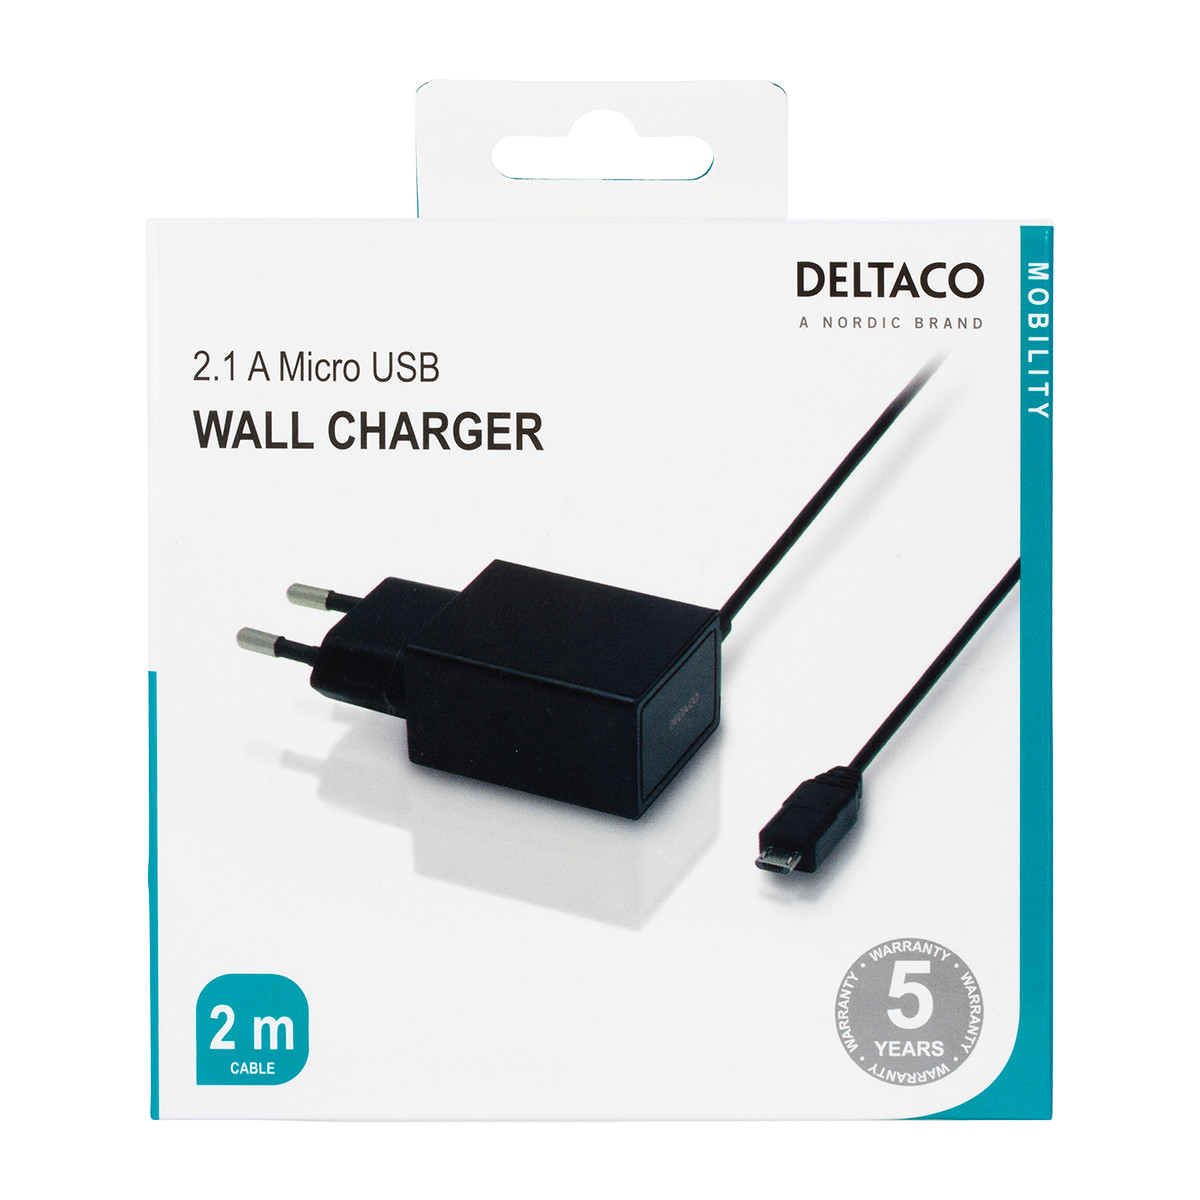 DELTACO Väggladdare 230V till 5V USB, 2.1A, 1x USB Micro B, 2m, svart